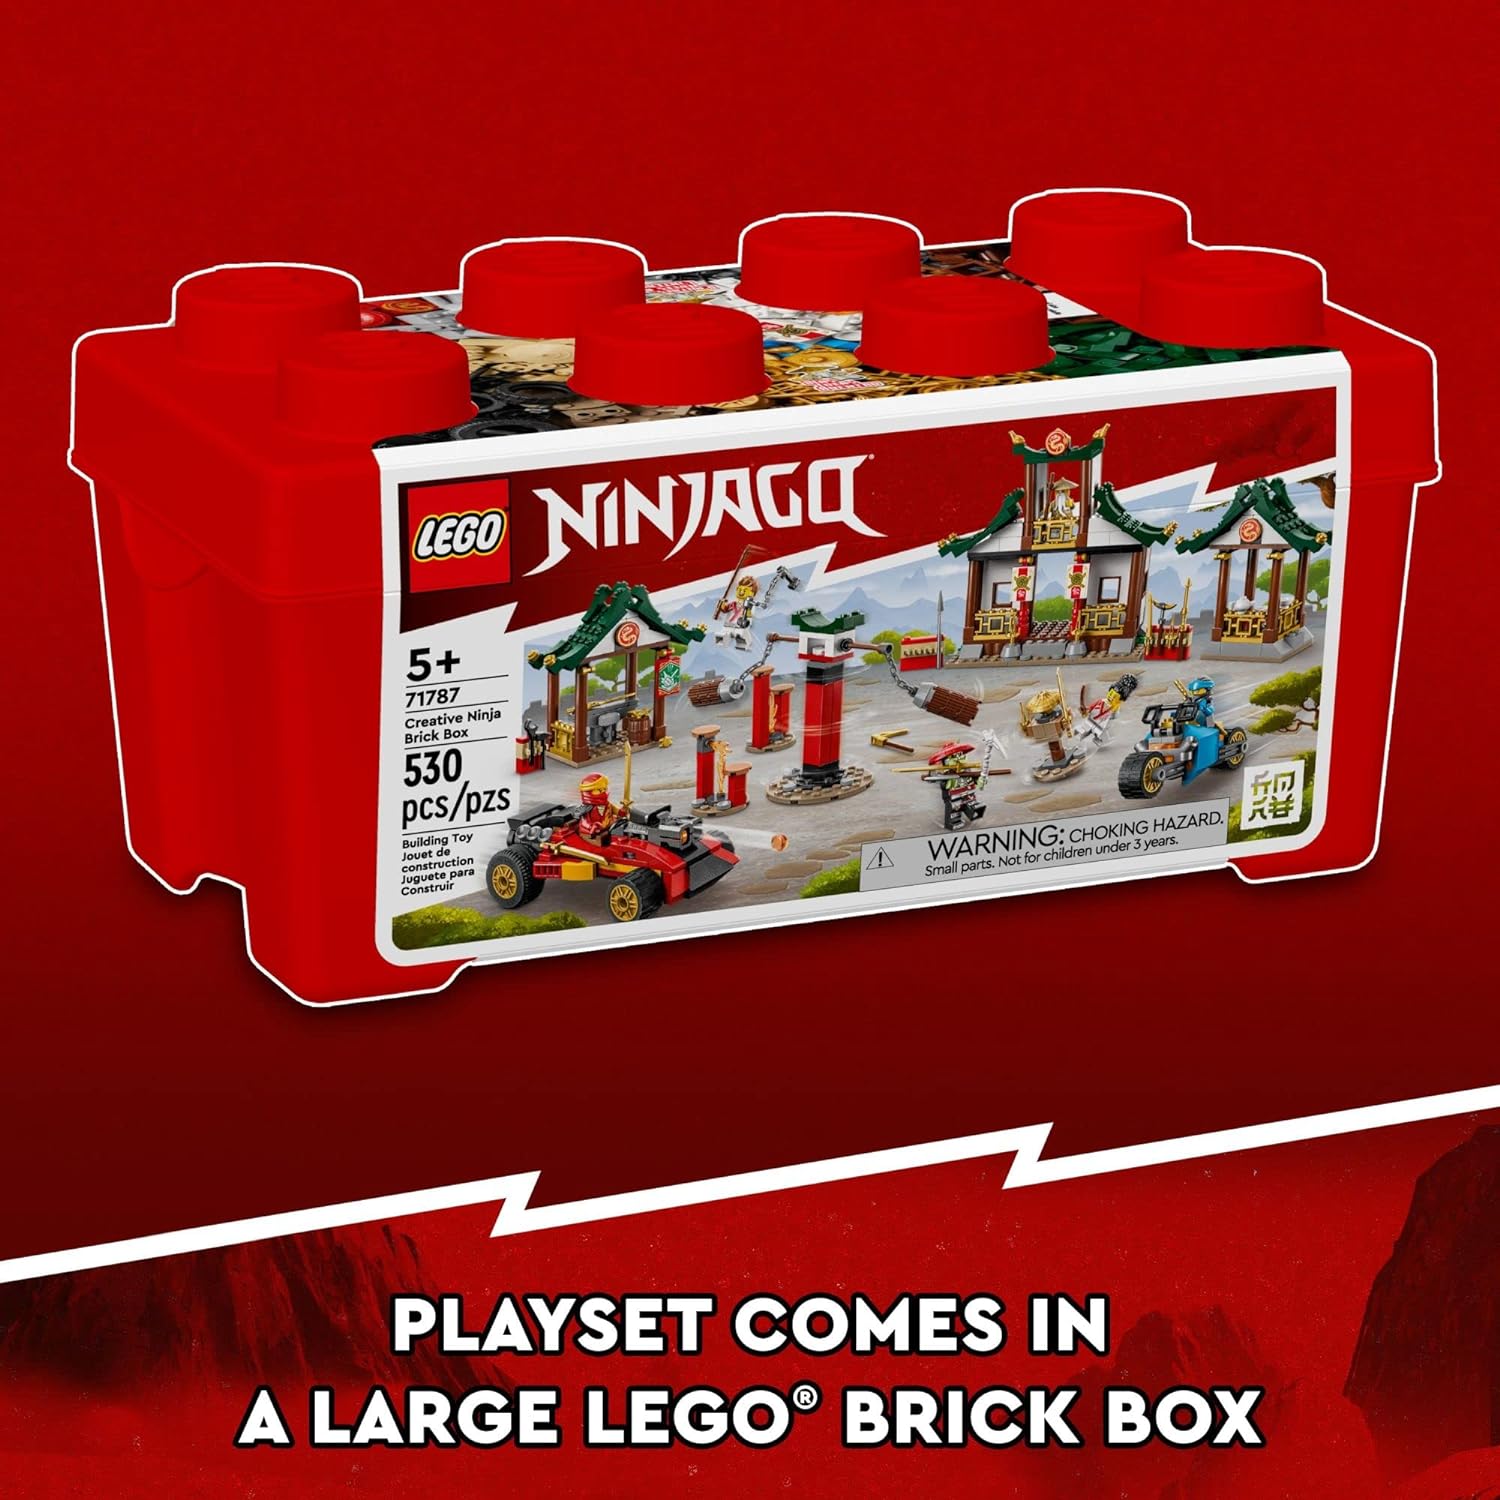 صندوق مكعبات النينجا الإبداعي من ليجو نينجاجو 71787، تخزين الألعاب، مكعبات لبناء الدوجو، سيارة نينجا، دراجة نارية، 6 شخصيات مصغرة والمزيد، ألعاب للأطفال 5 زائد